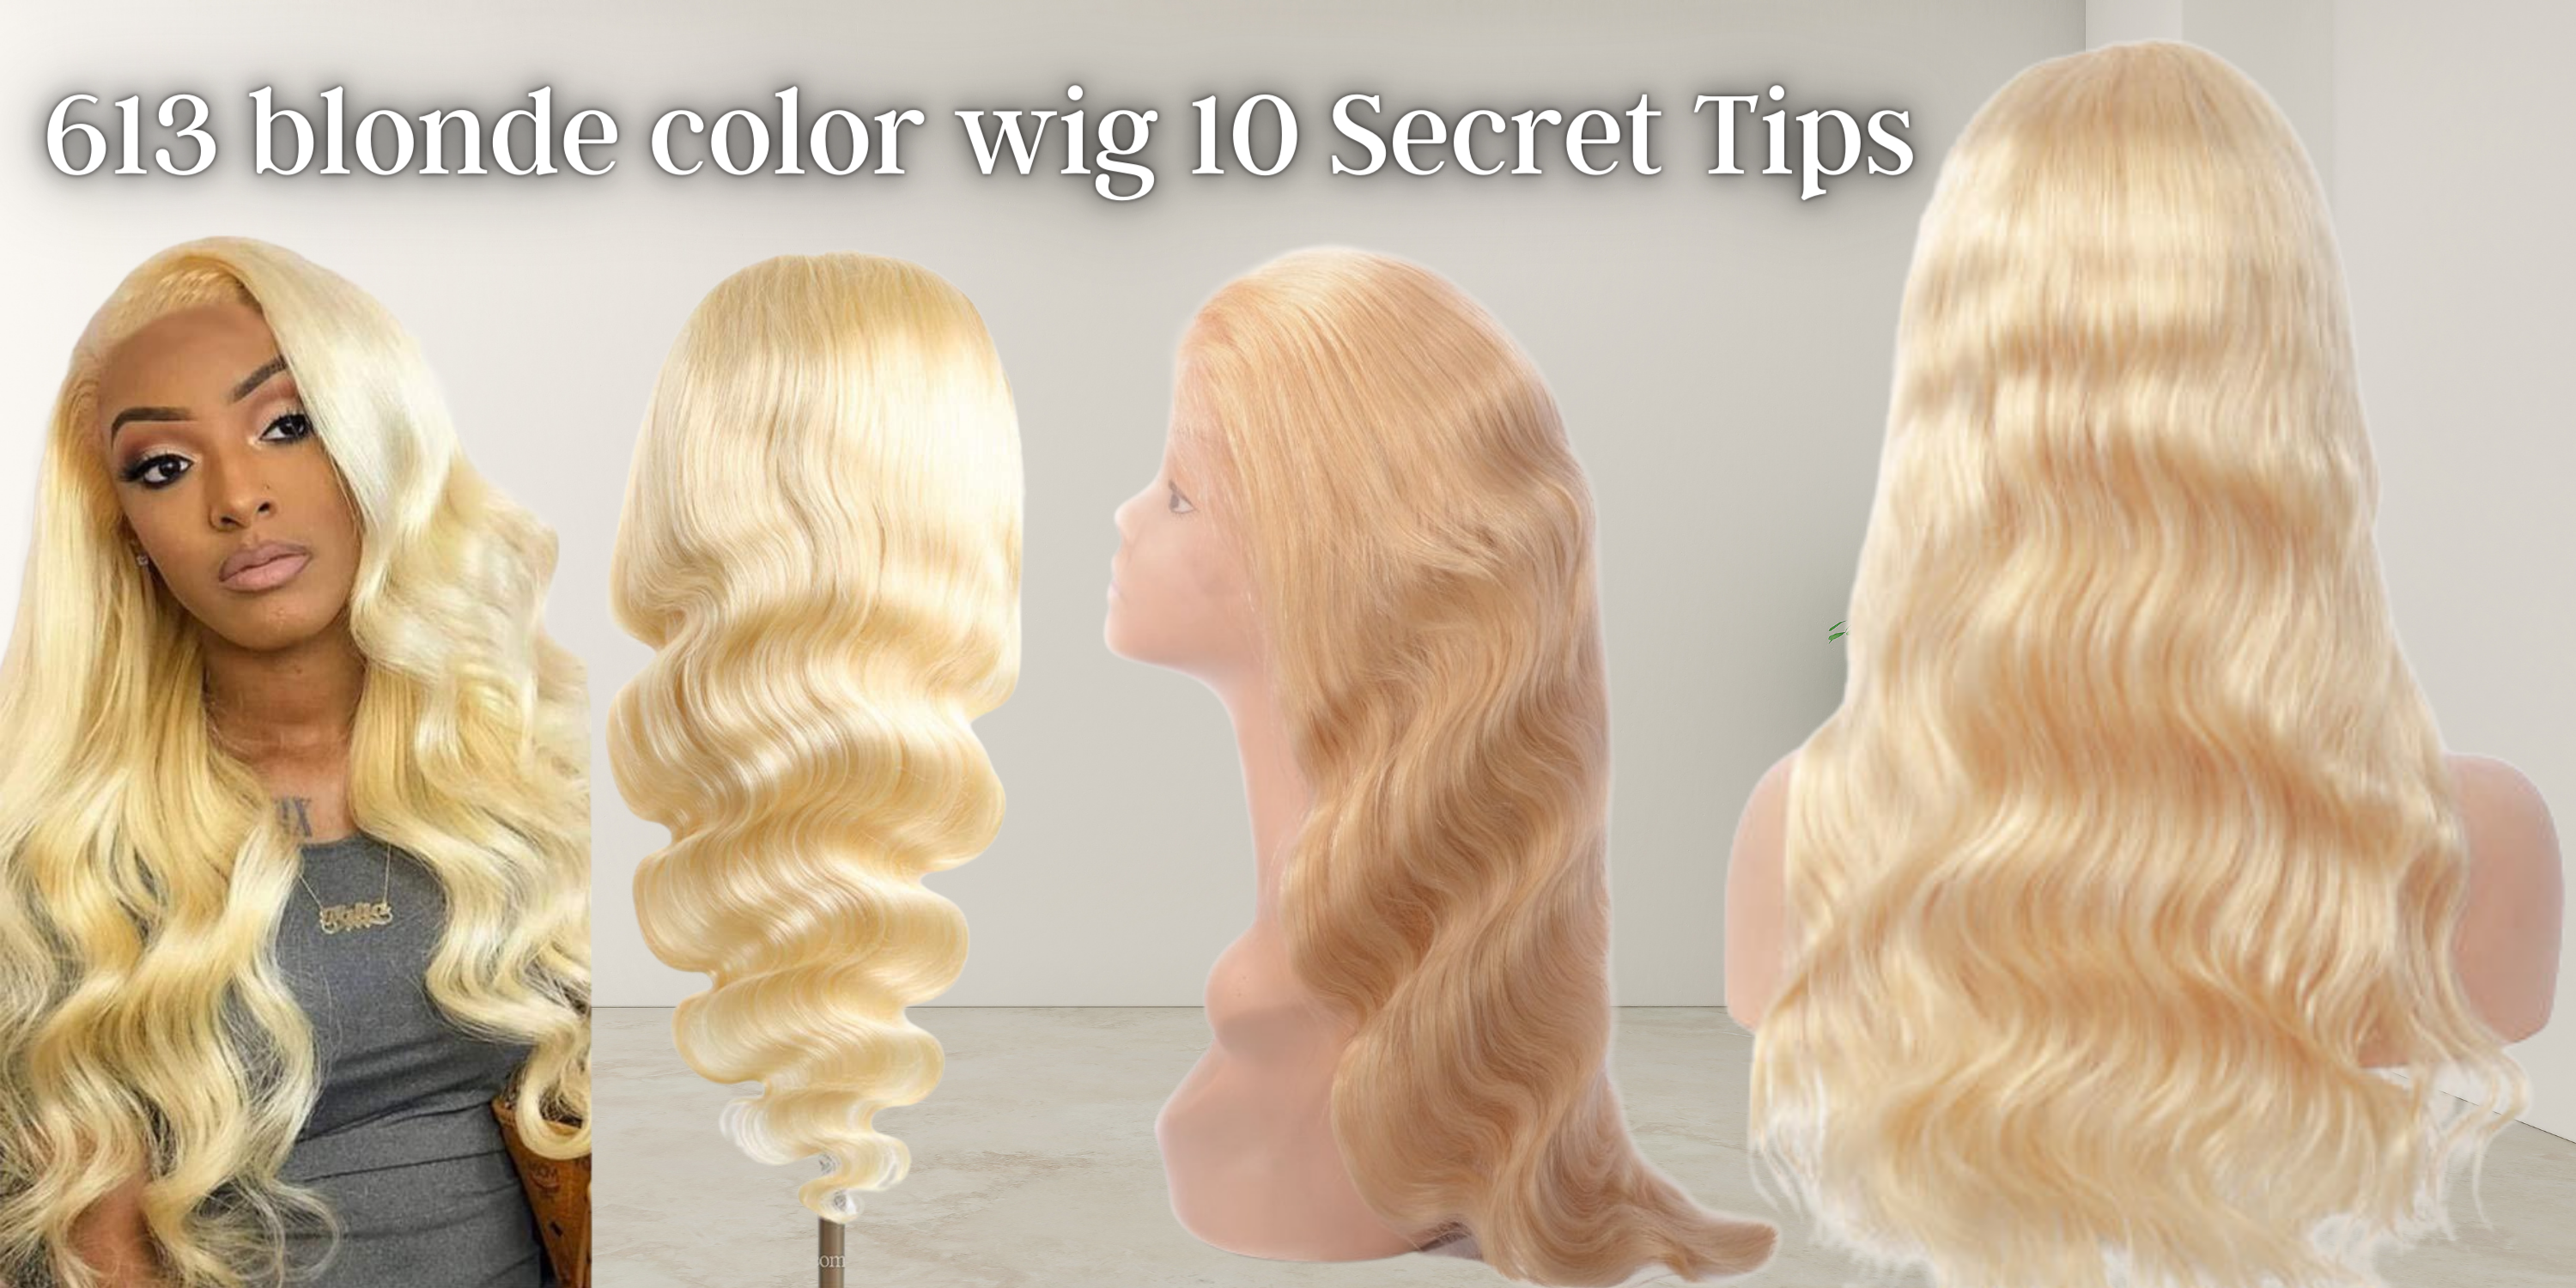 613 blonde color wig: 10 Secret Tips To Help You Get Better